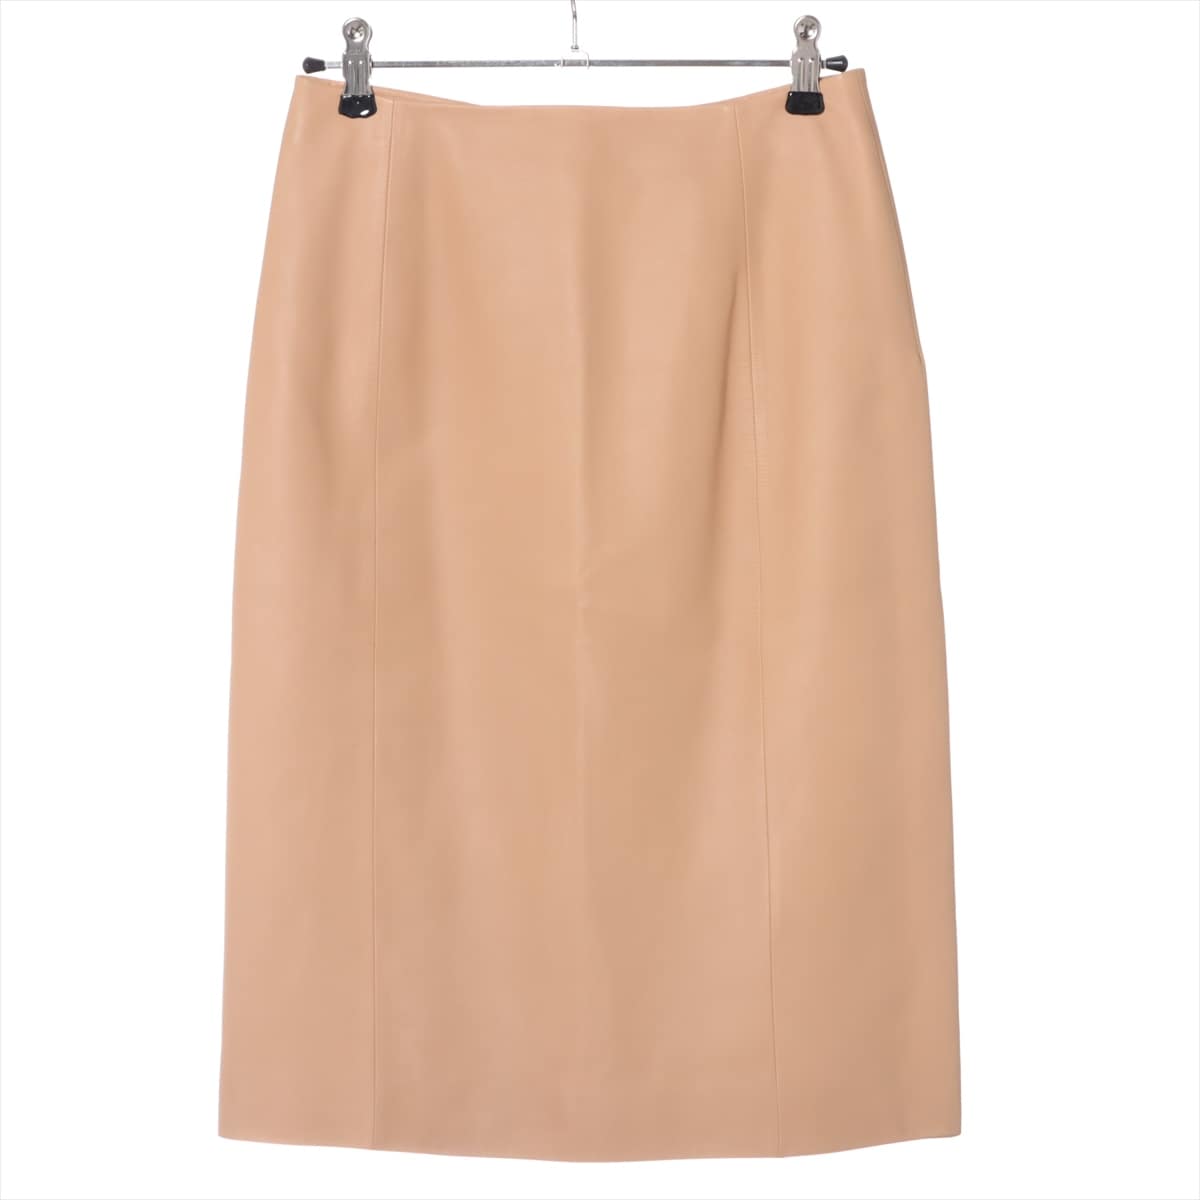 Loewe Unknown material Skirt 36 Ladies' Beige